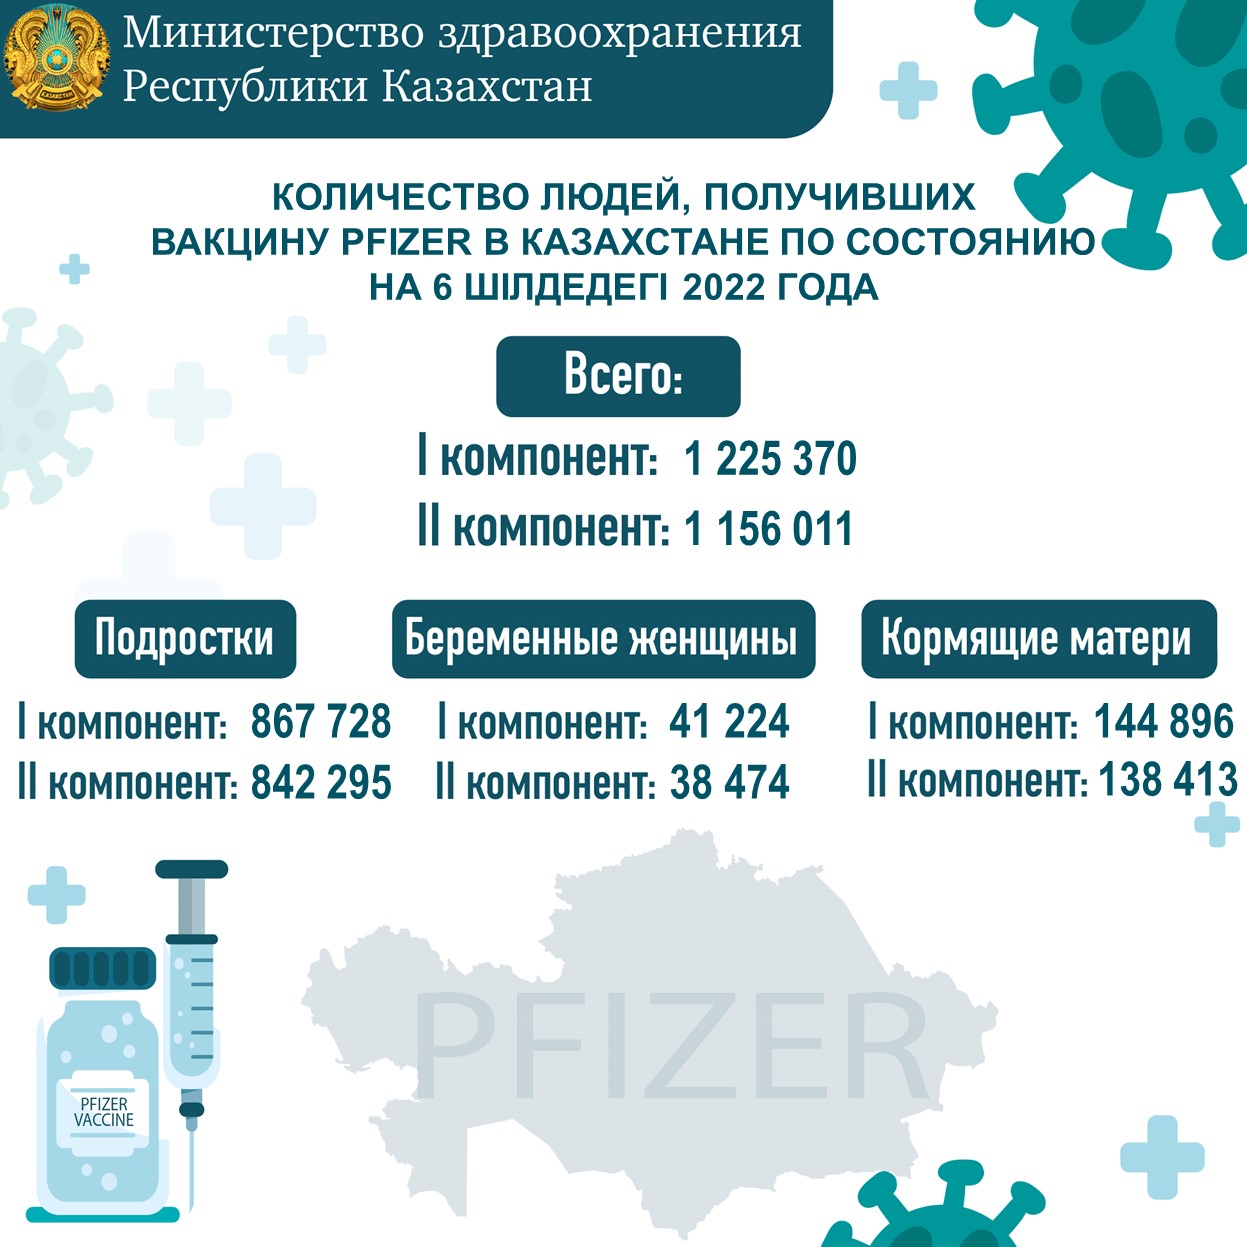 Количество людей, получивших вакцину Рfizer в Казахстане по состоянию на 6.07.2022 года